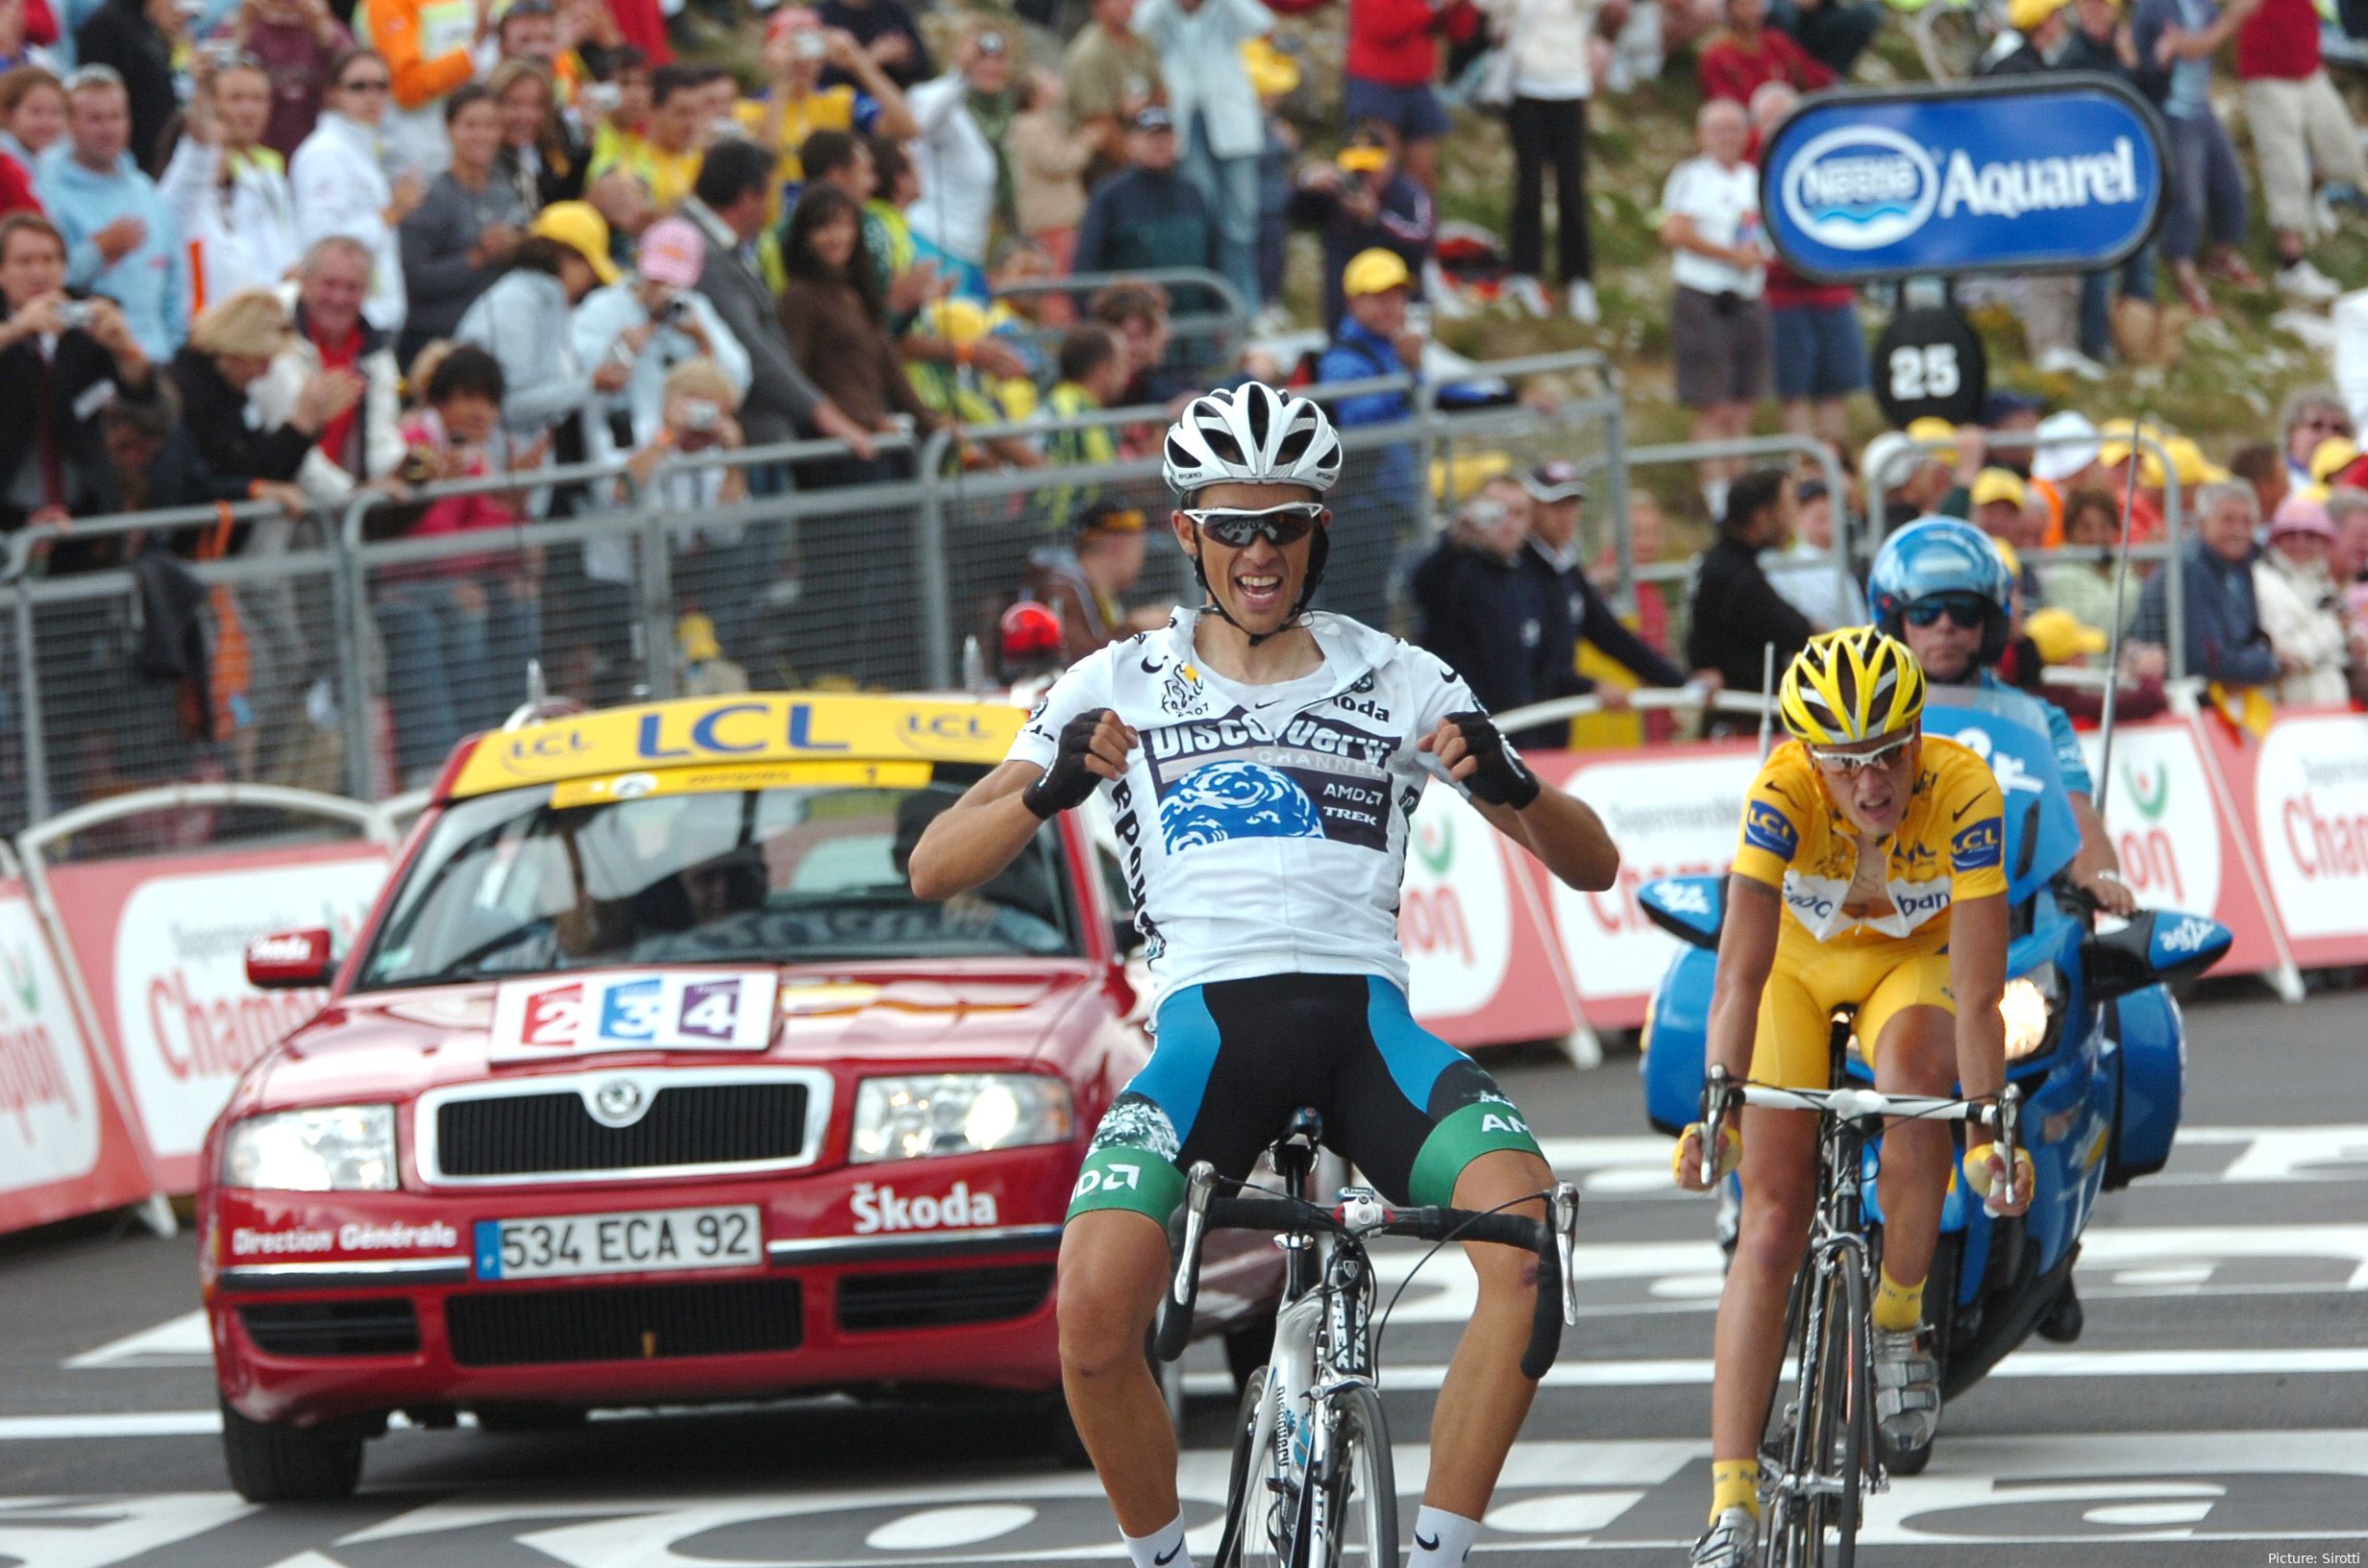 Bild Alberto Contador bei Zielankunft, Fäuste zum Sieg geballt<br>